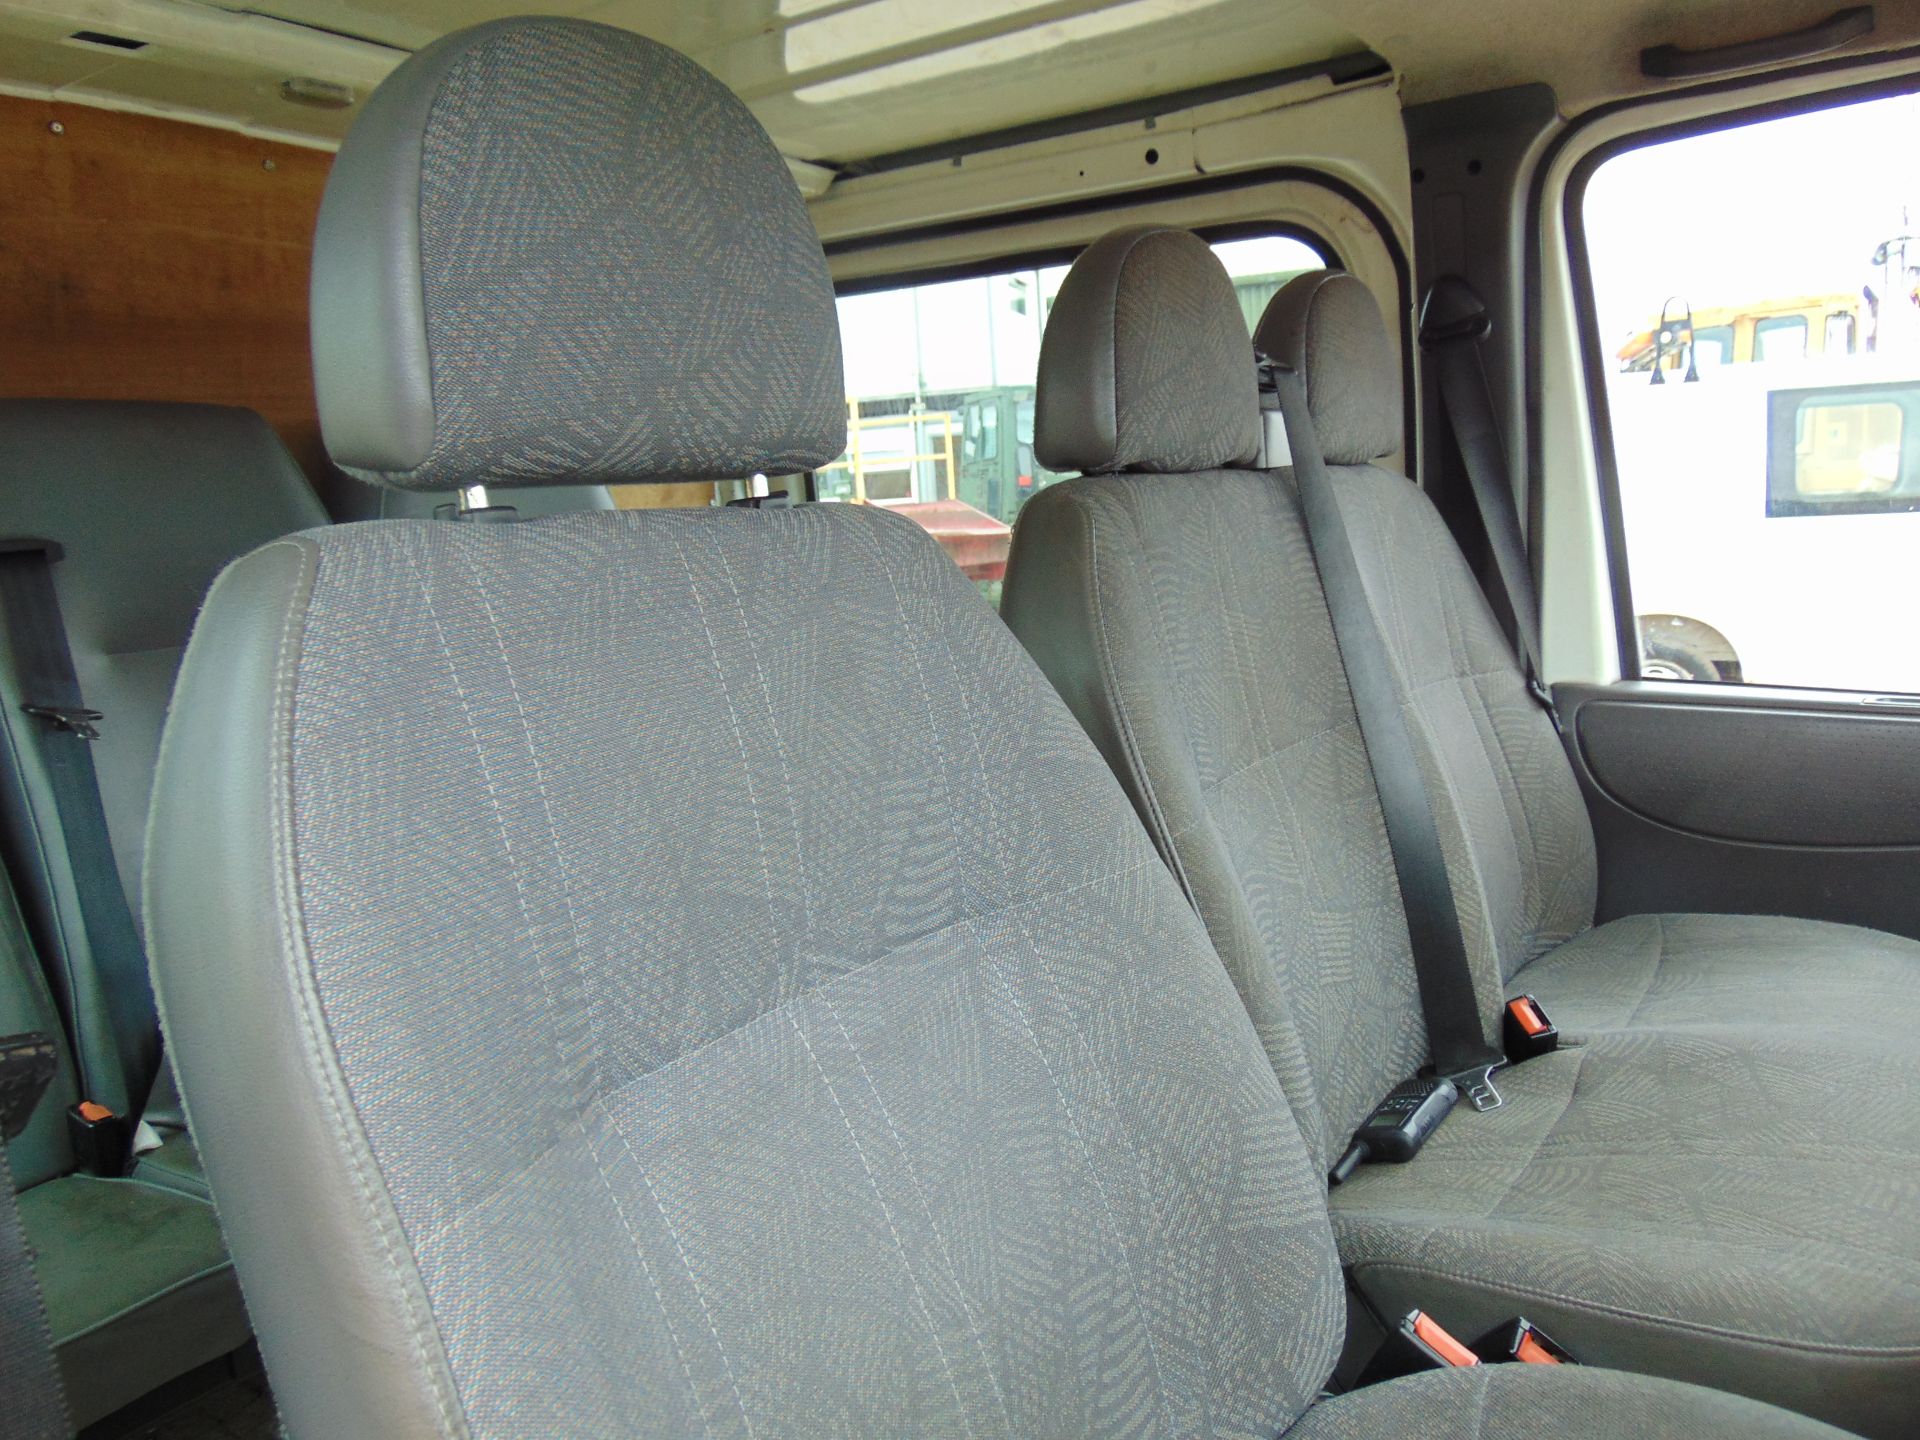 Ford Transit T260 Crewcab Panel Van - Image 11 of 22